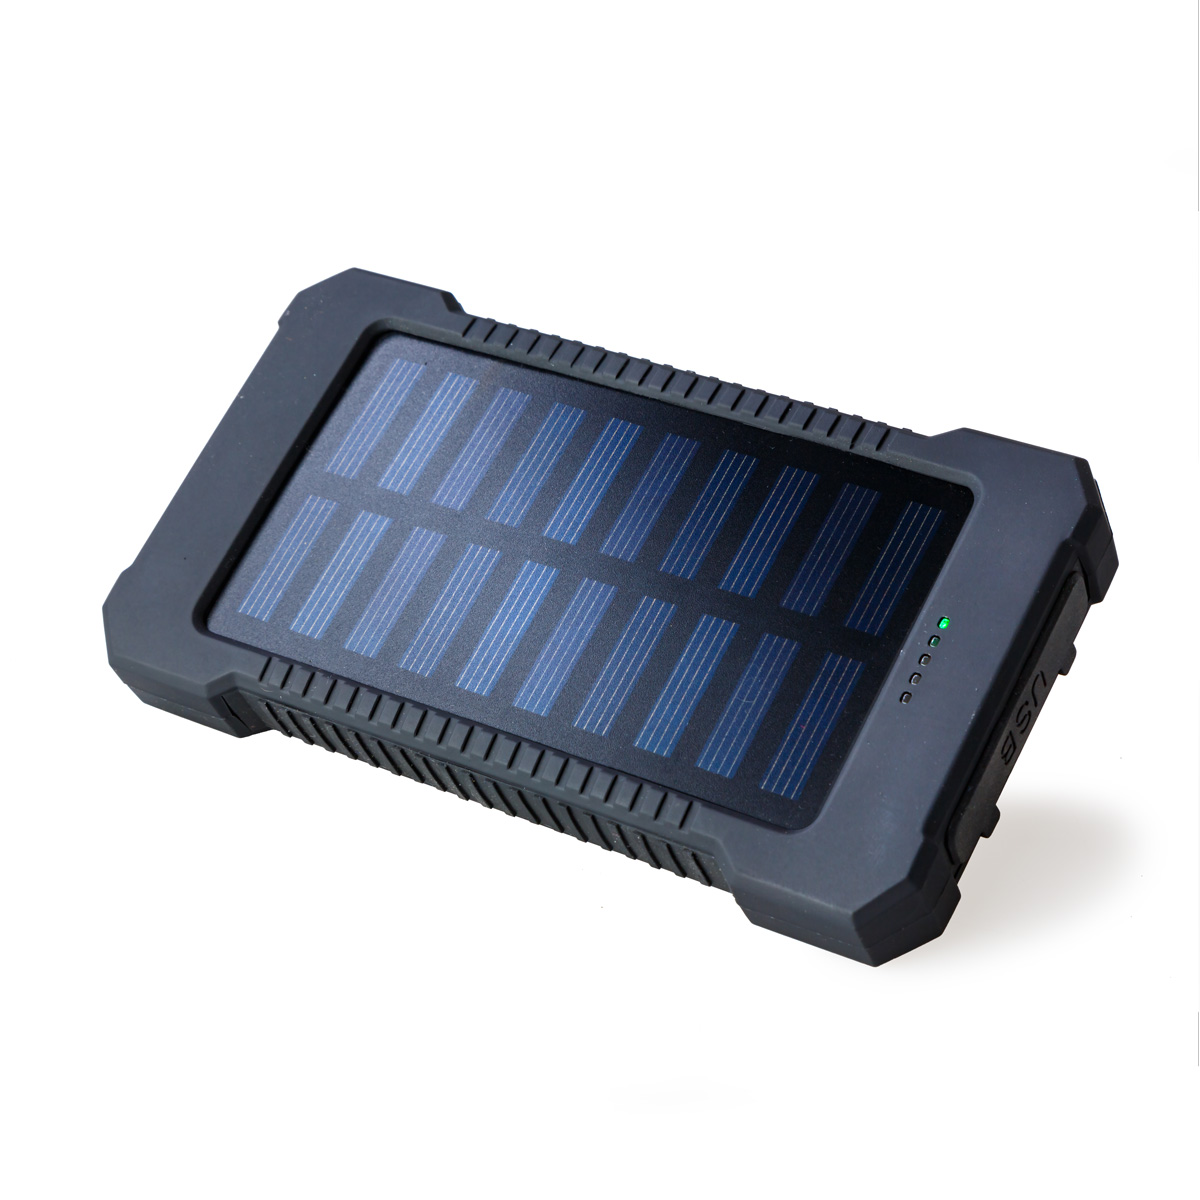 Taiky Solar 8000mAh Powerbank Product Image